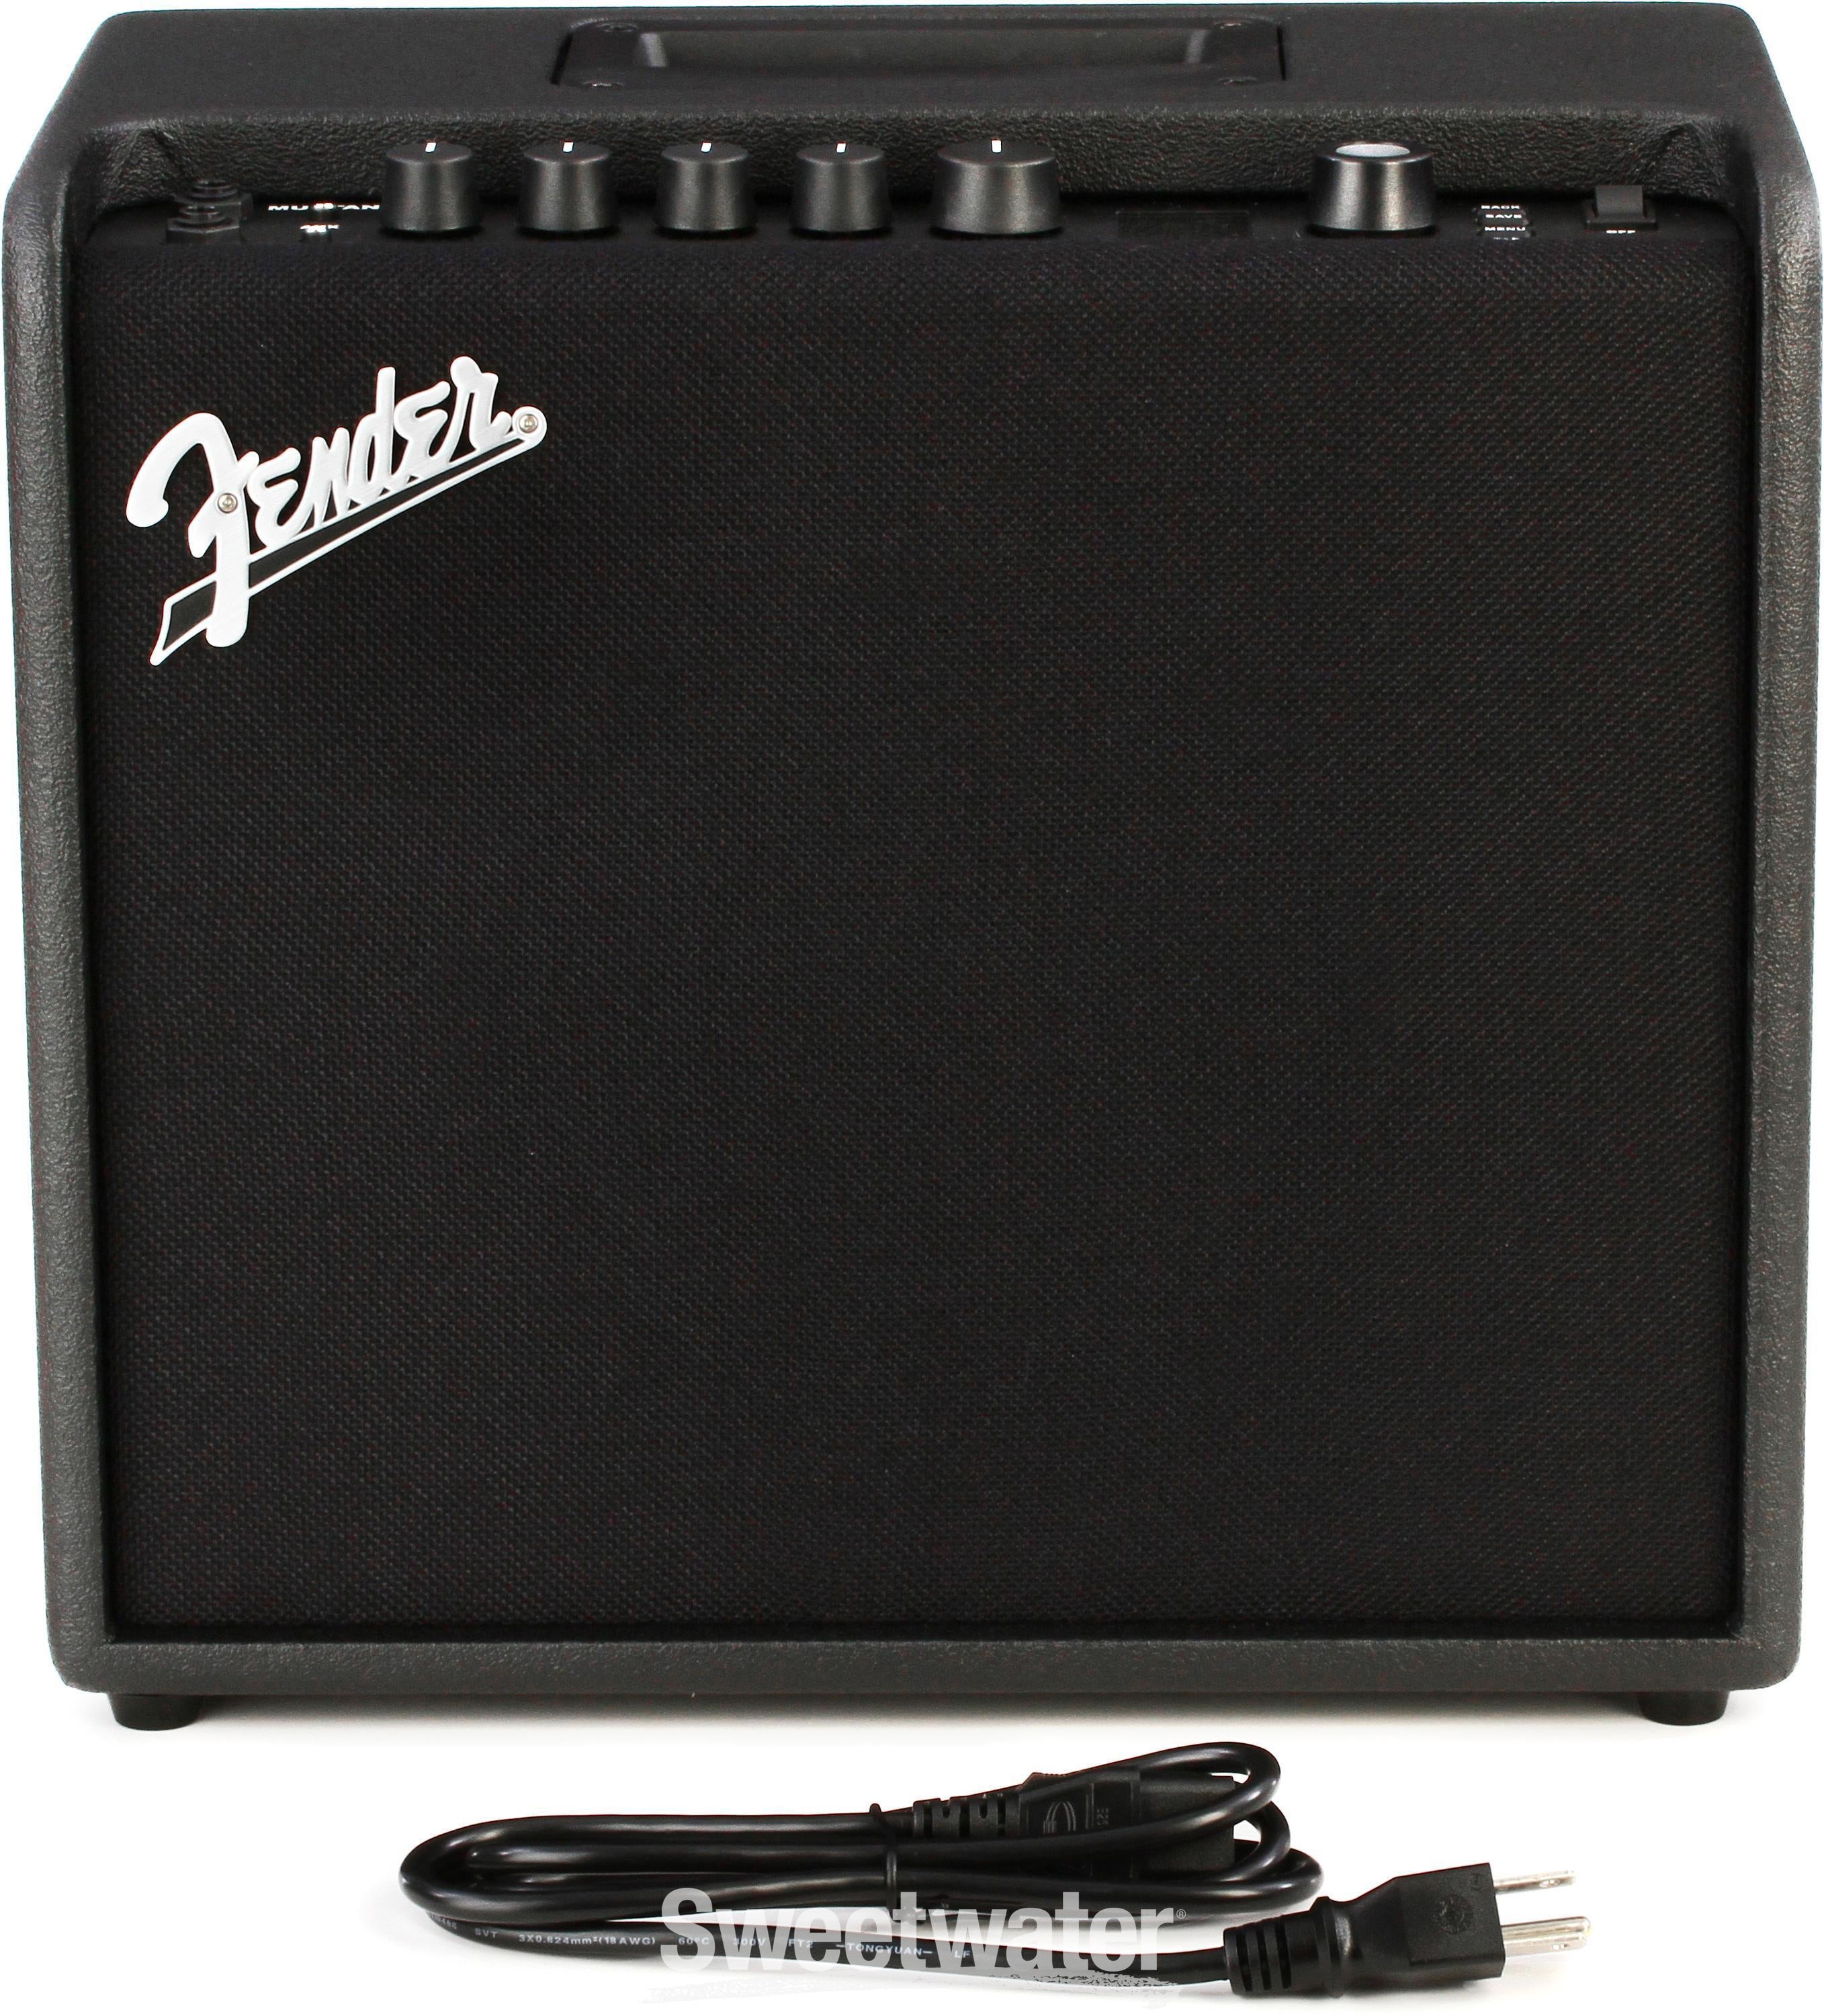 Fender Mustang LT 25 1 x 8-inch 25-watt Combo Amp | Sweetwater